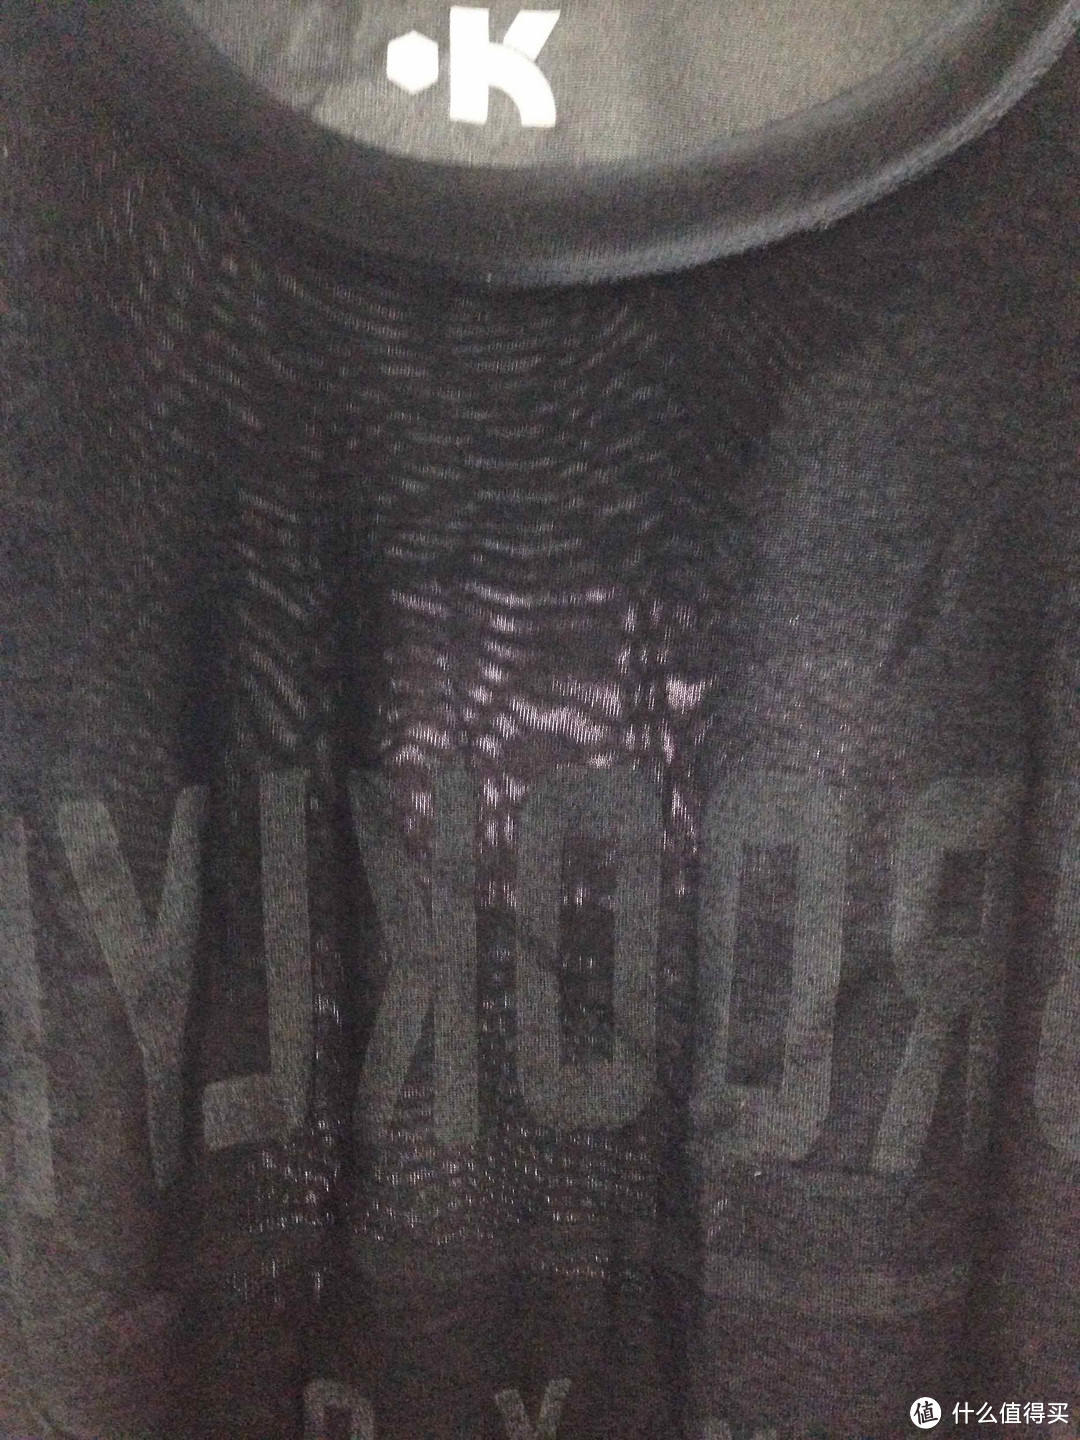 合适就好：Kipsta Equarea 篮球T恤 VS Nike Dry-Fit 欧文版篮球T恤